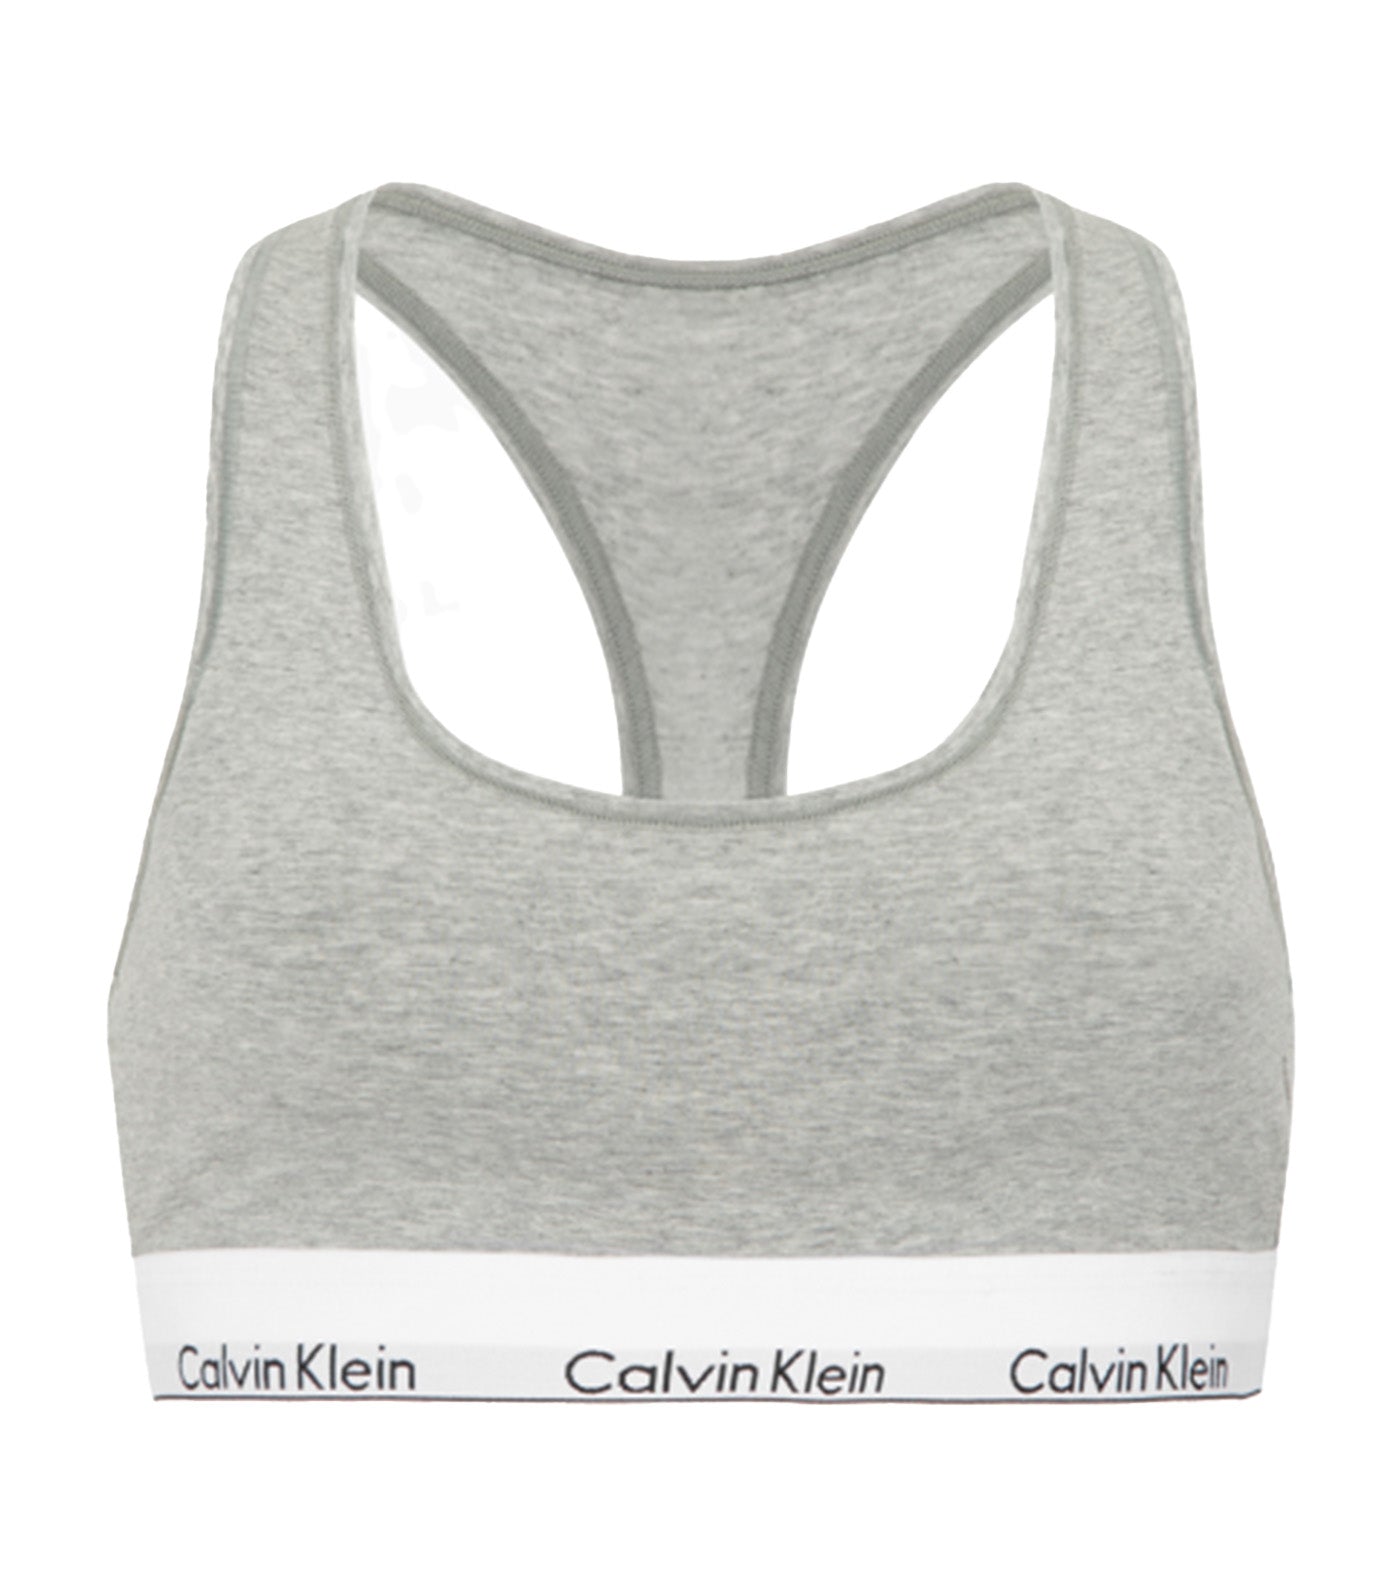 Calvin Klein - Calvin Klein Modern Cotton Bralette Lightly Lined